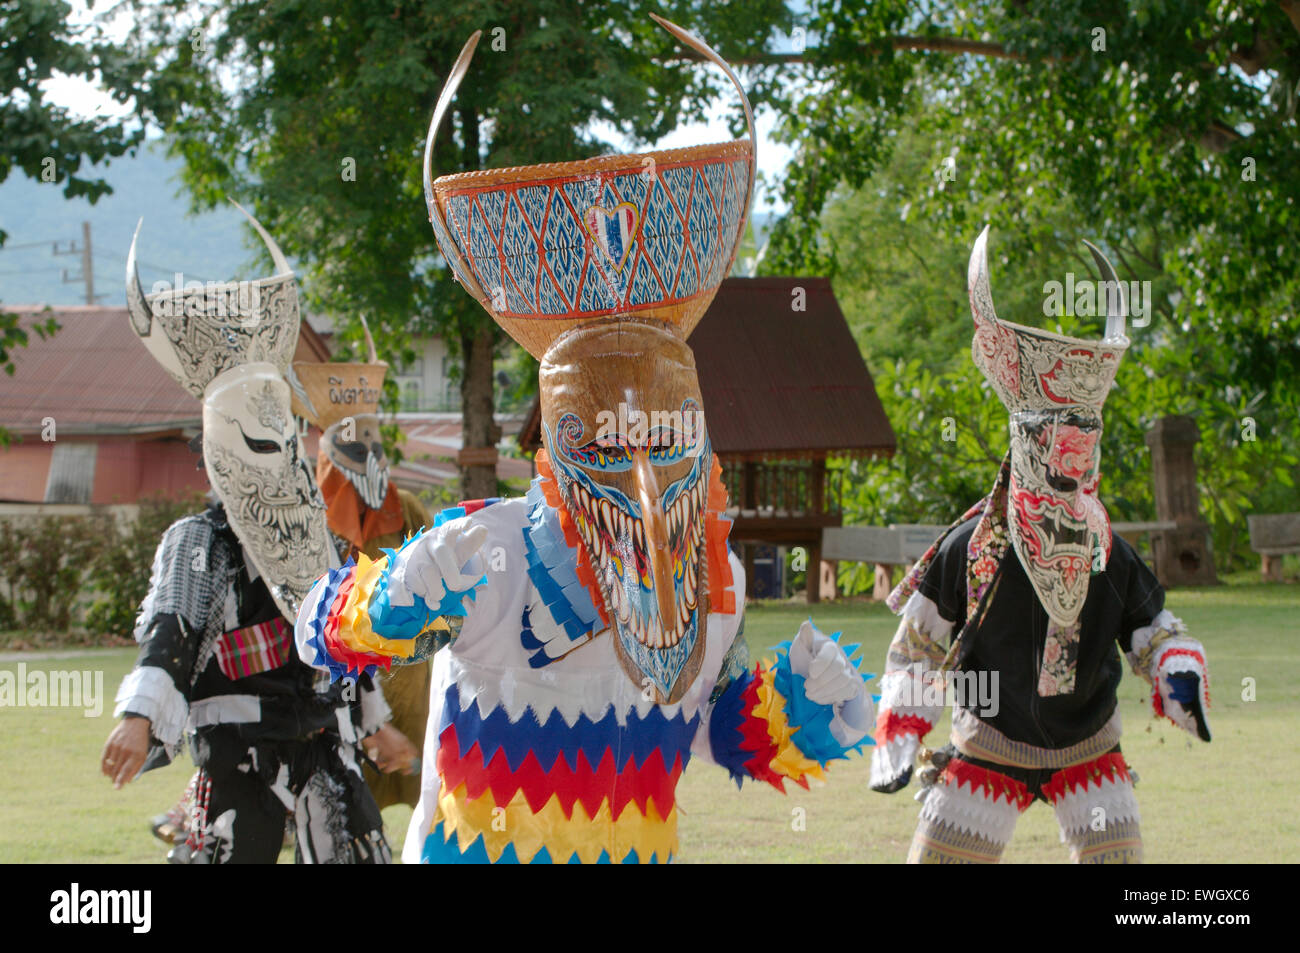 Les gens déguisés avec des masques et des costumes colorés fantôme. Phi Ta Khon Festival des masques Banque D'Images